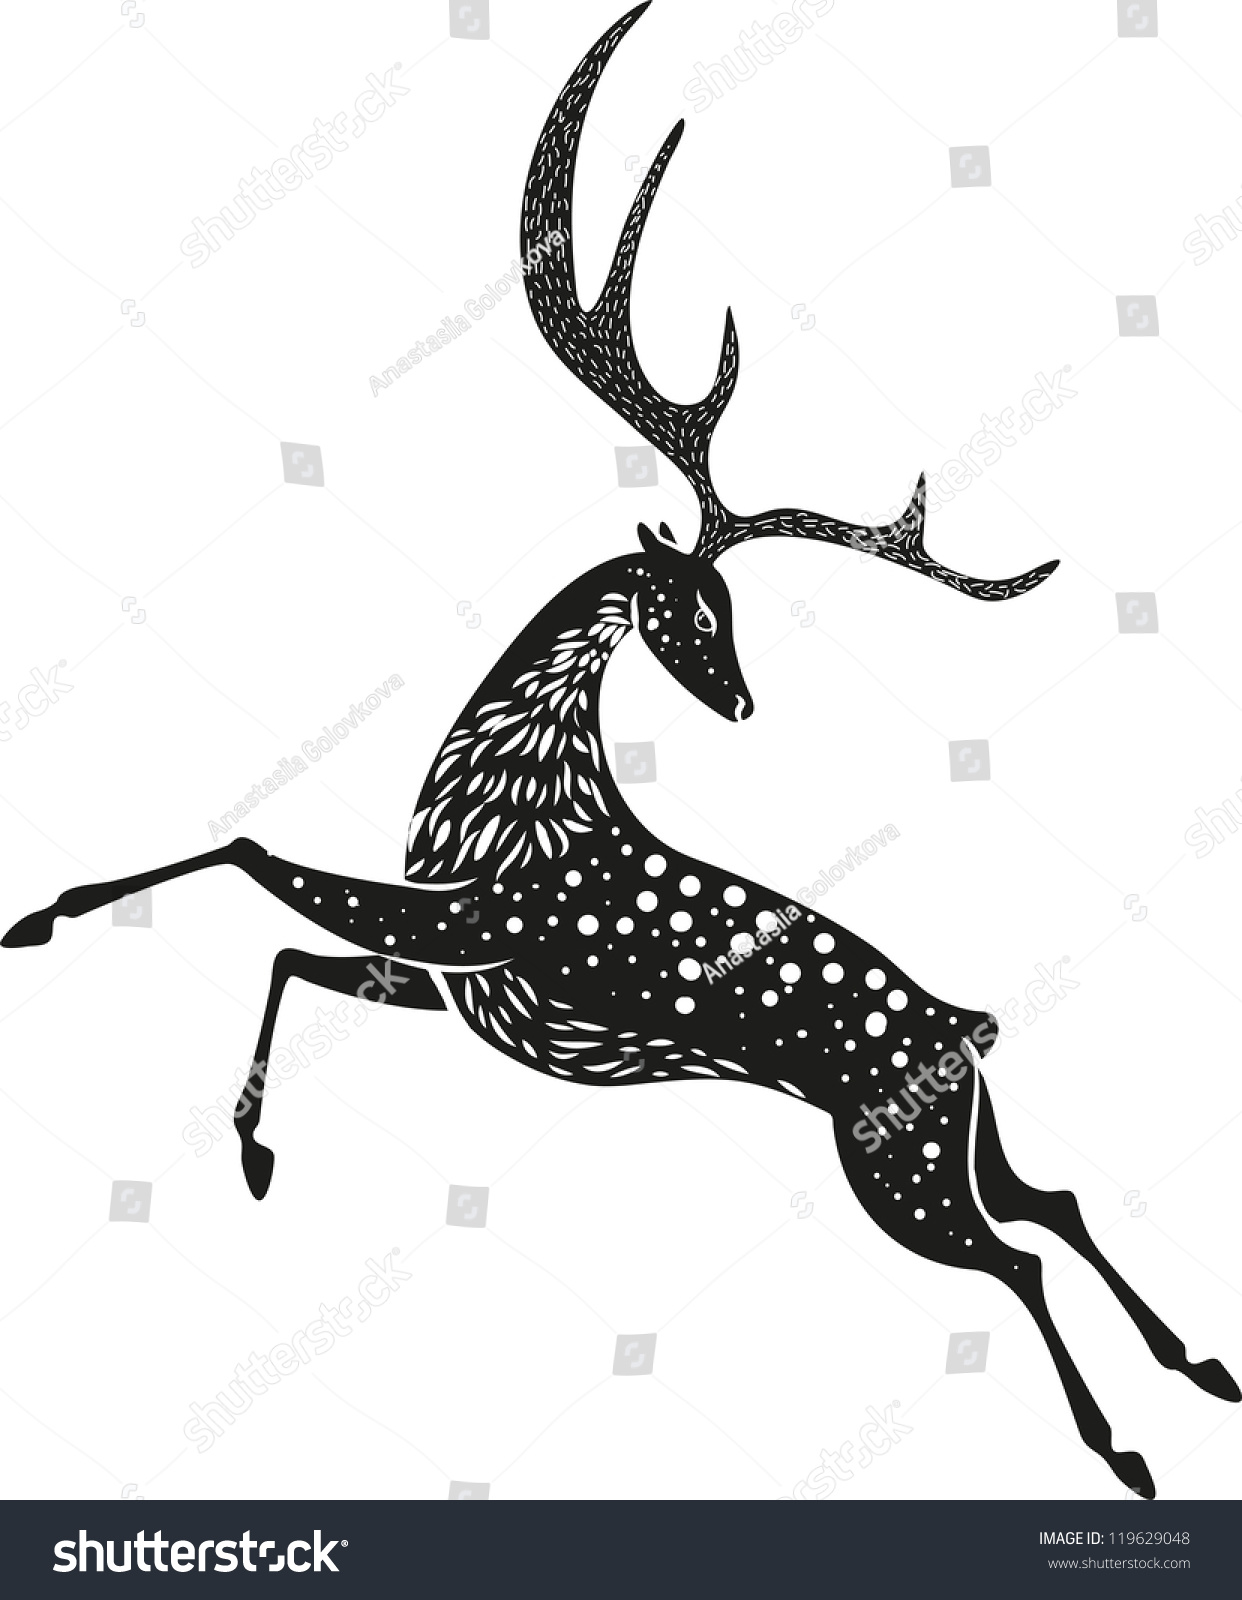 Black Christmas Deer Stock Vector Illustration 119629048 : Shutterstock